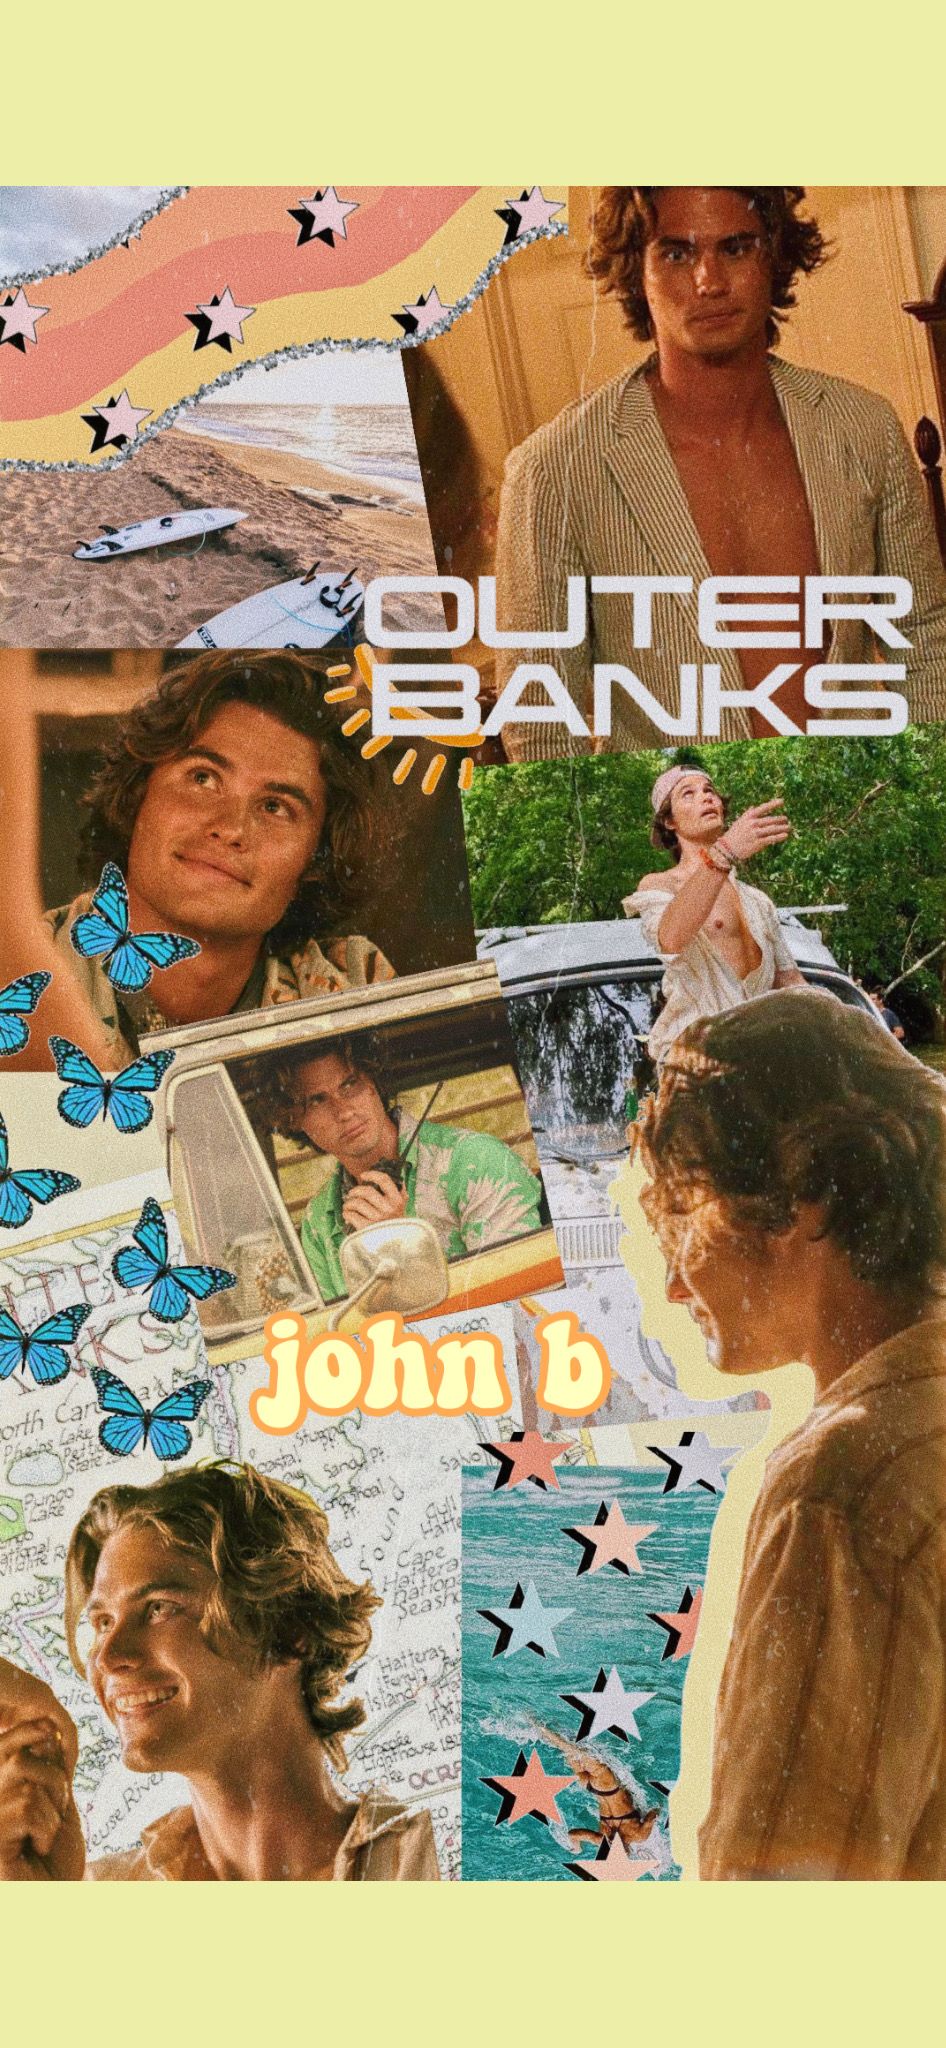 john b outer banks wallpaper. Outer banks, $b wallpaper, Outer